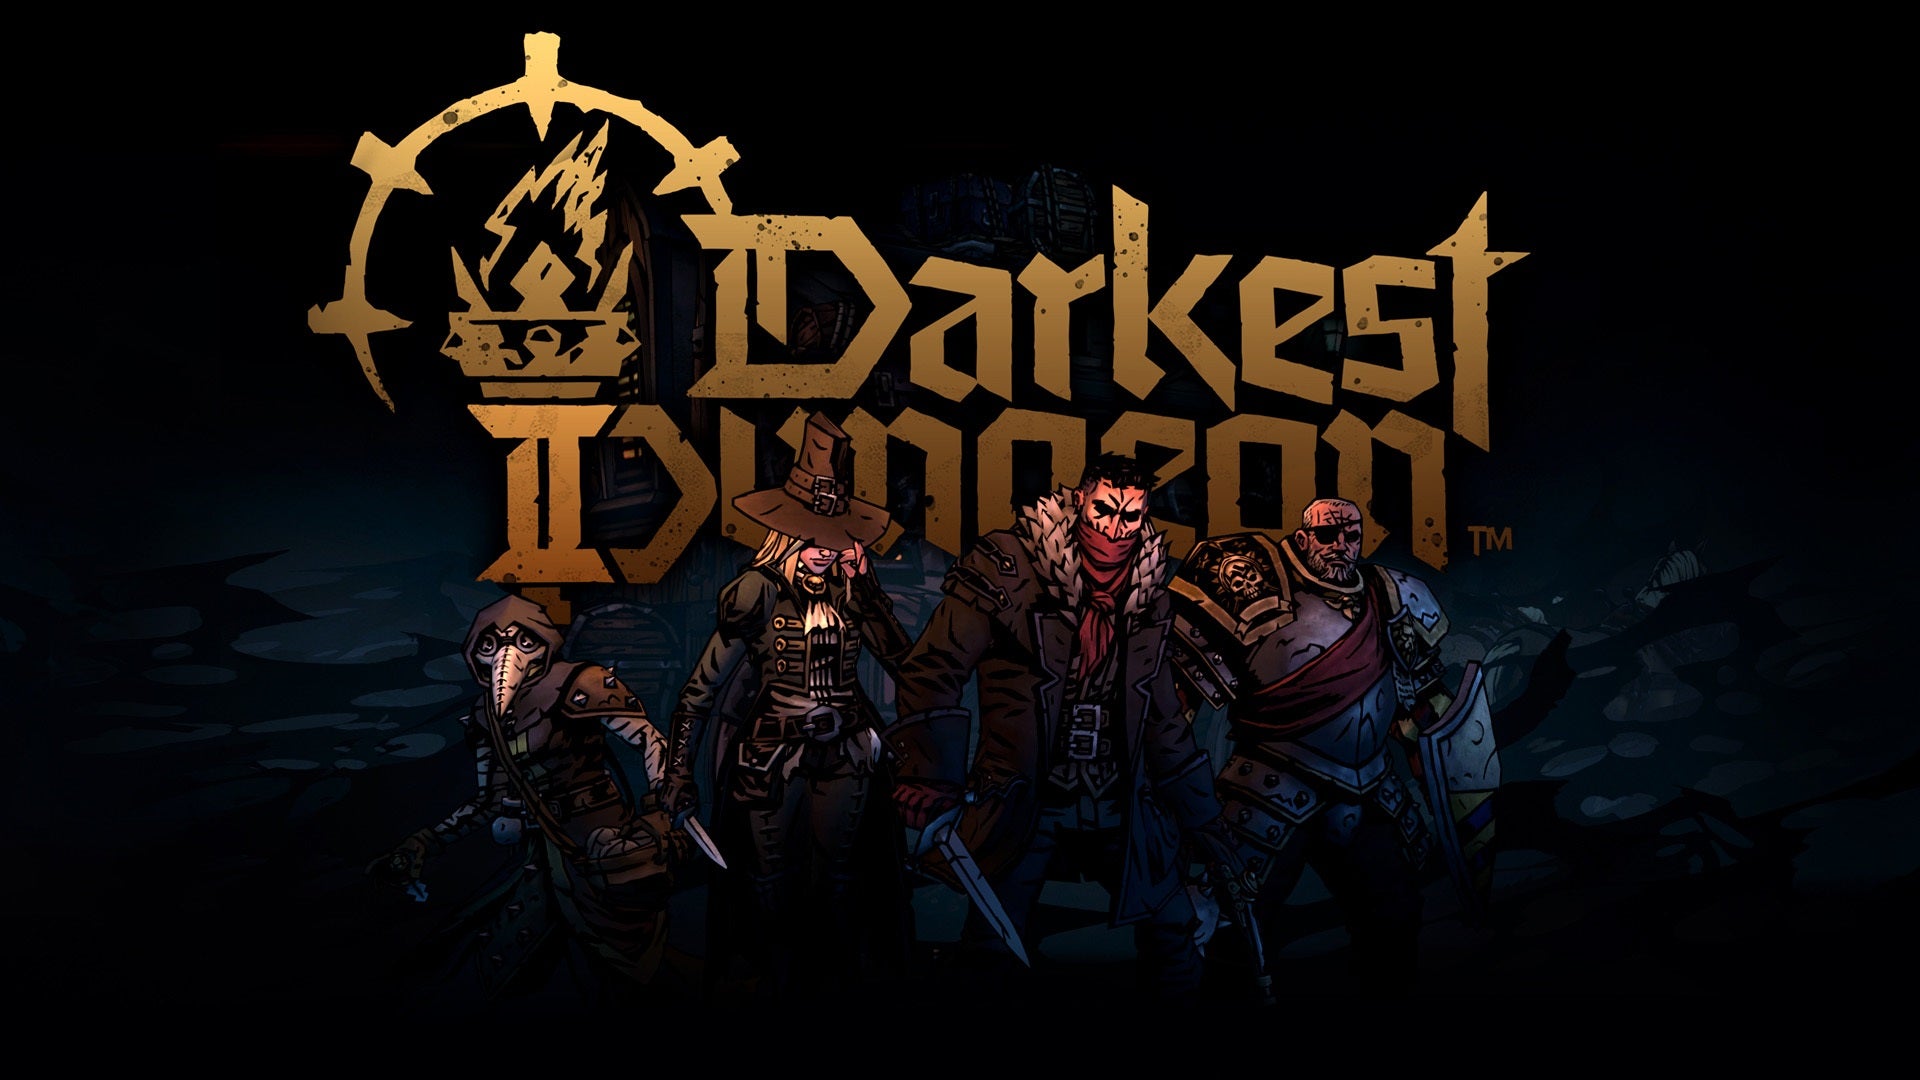 Darkest-dungeon-2-official-art